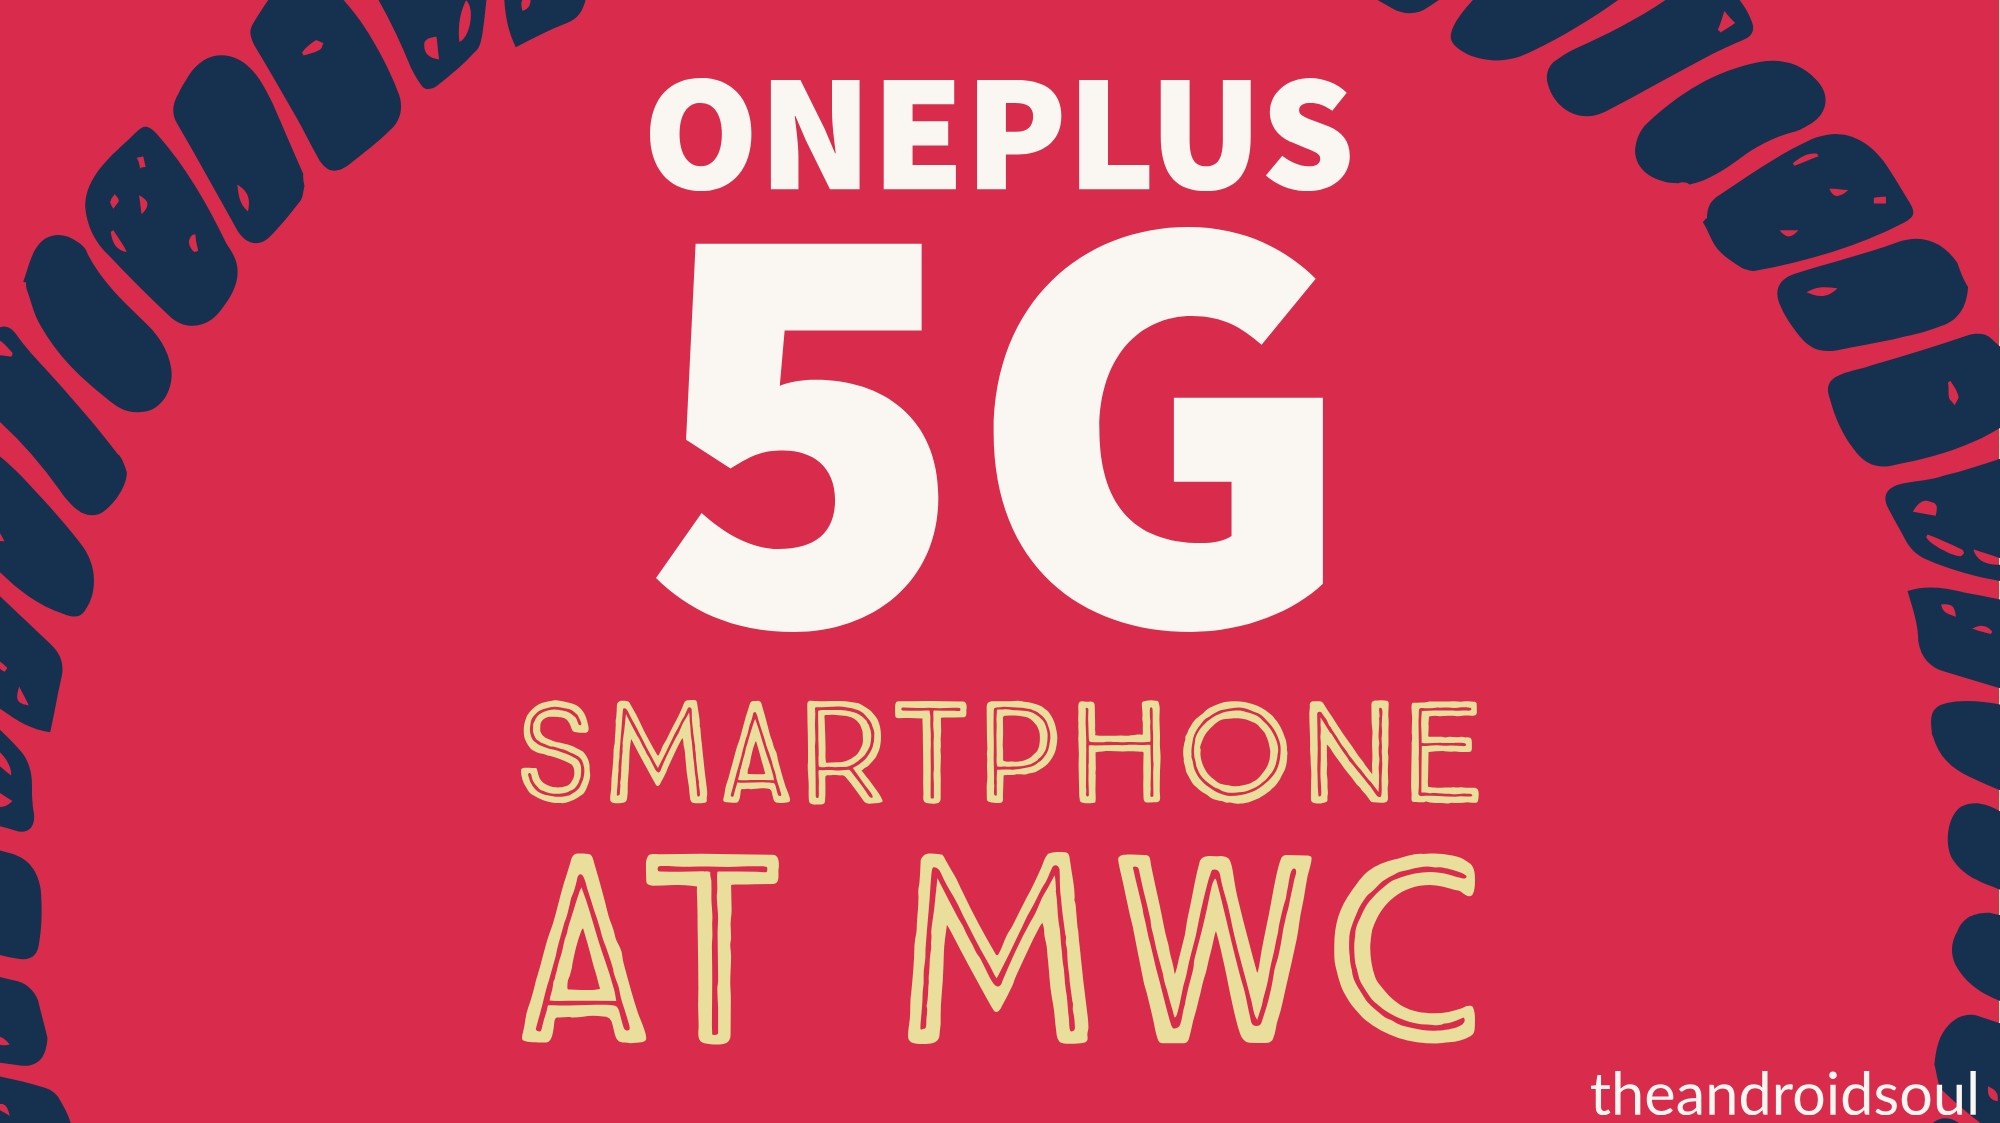 Prototipo del teléfono inteligente OnePlus 5G que se mostrará en el MWC 2019